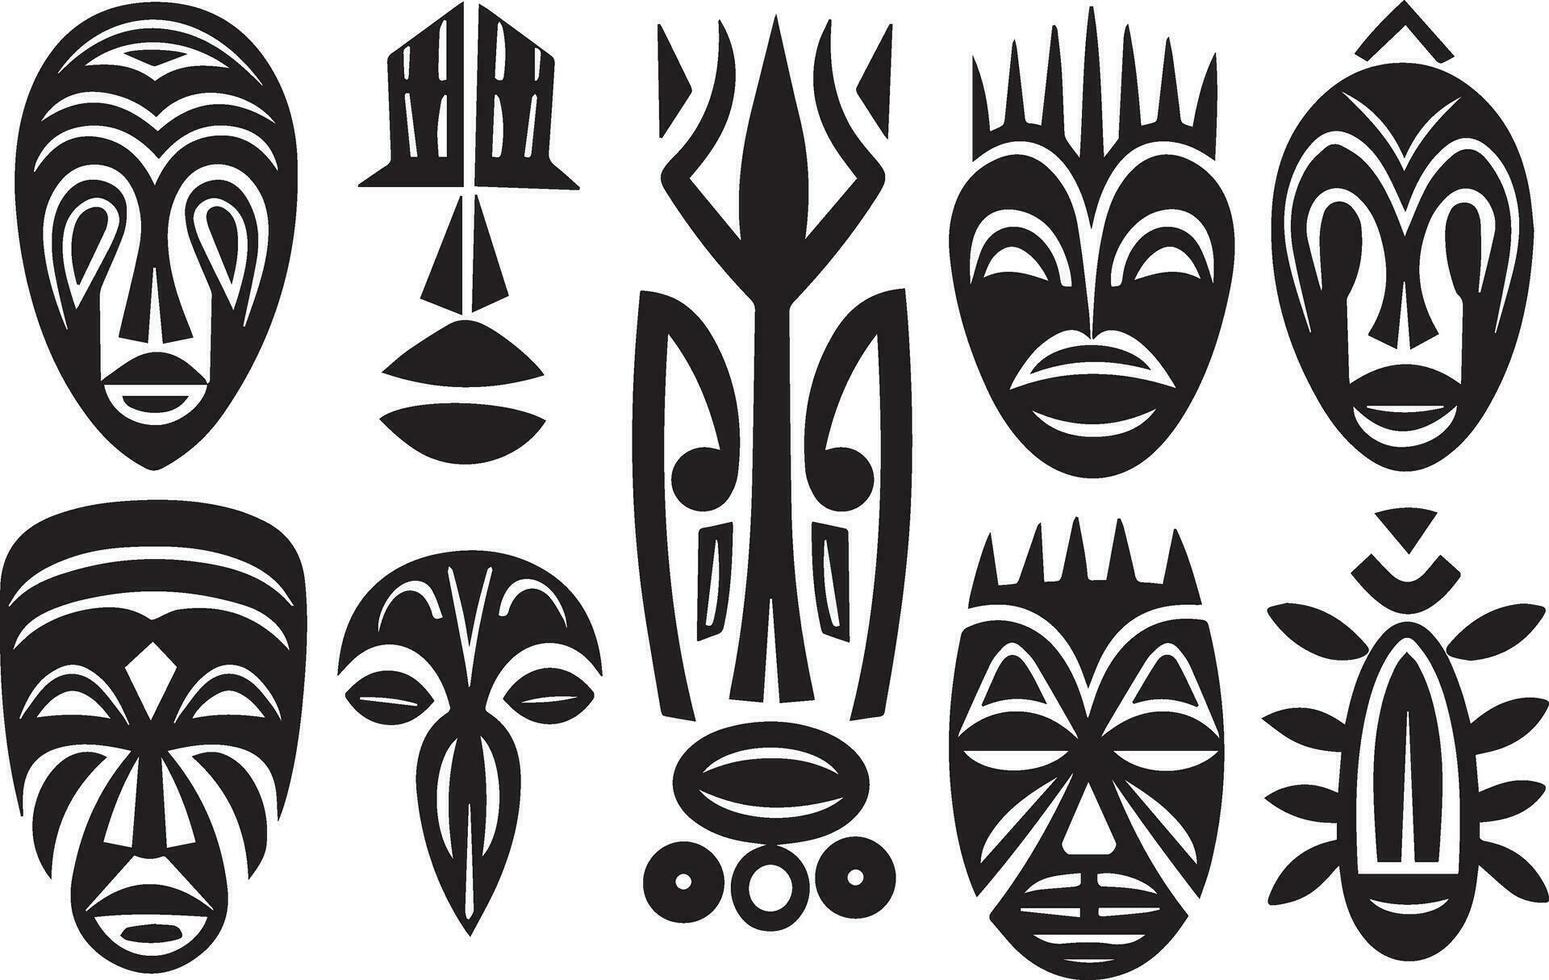 conjunto de africano tribal mascaras, tribal mascaras vector ilustración